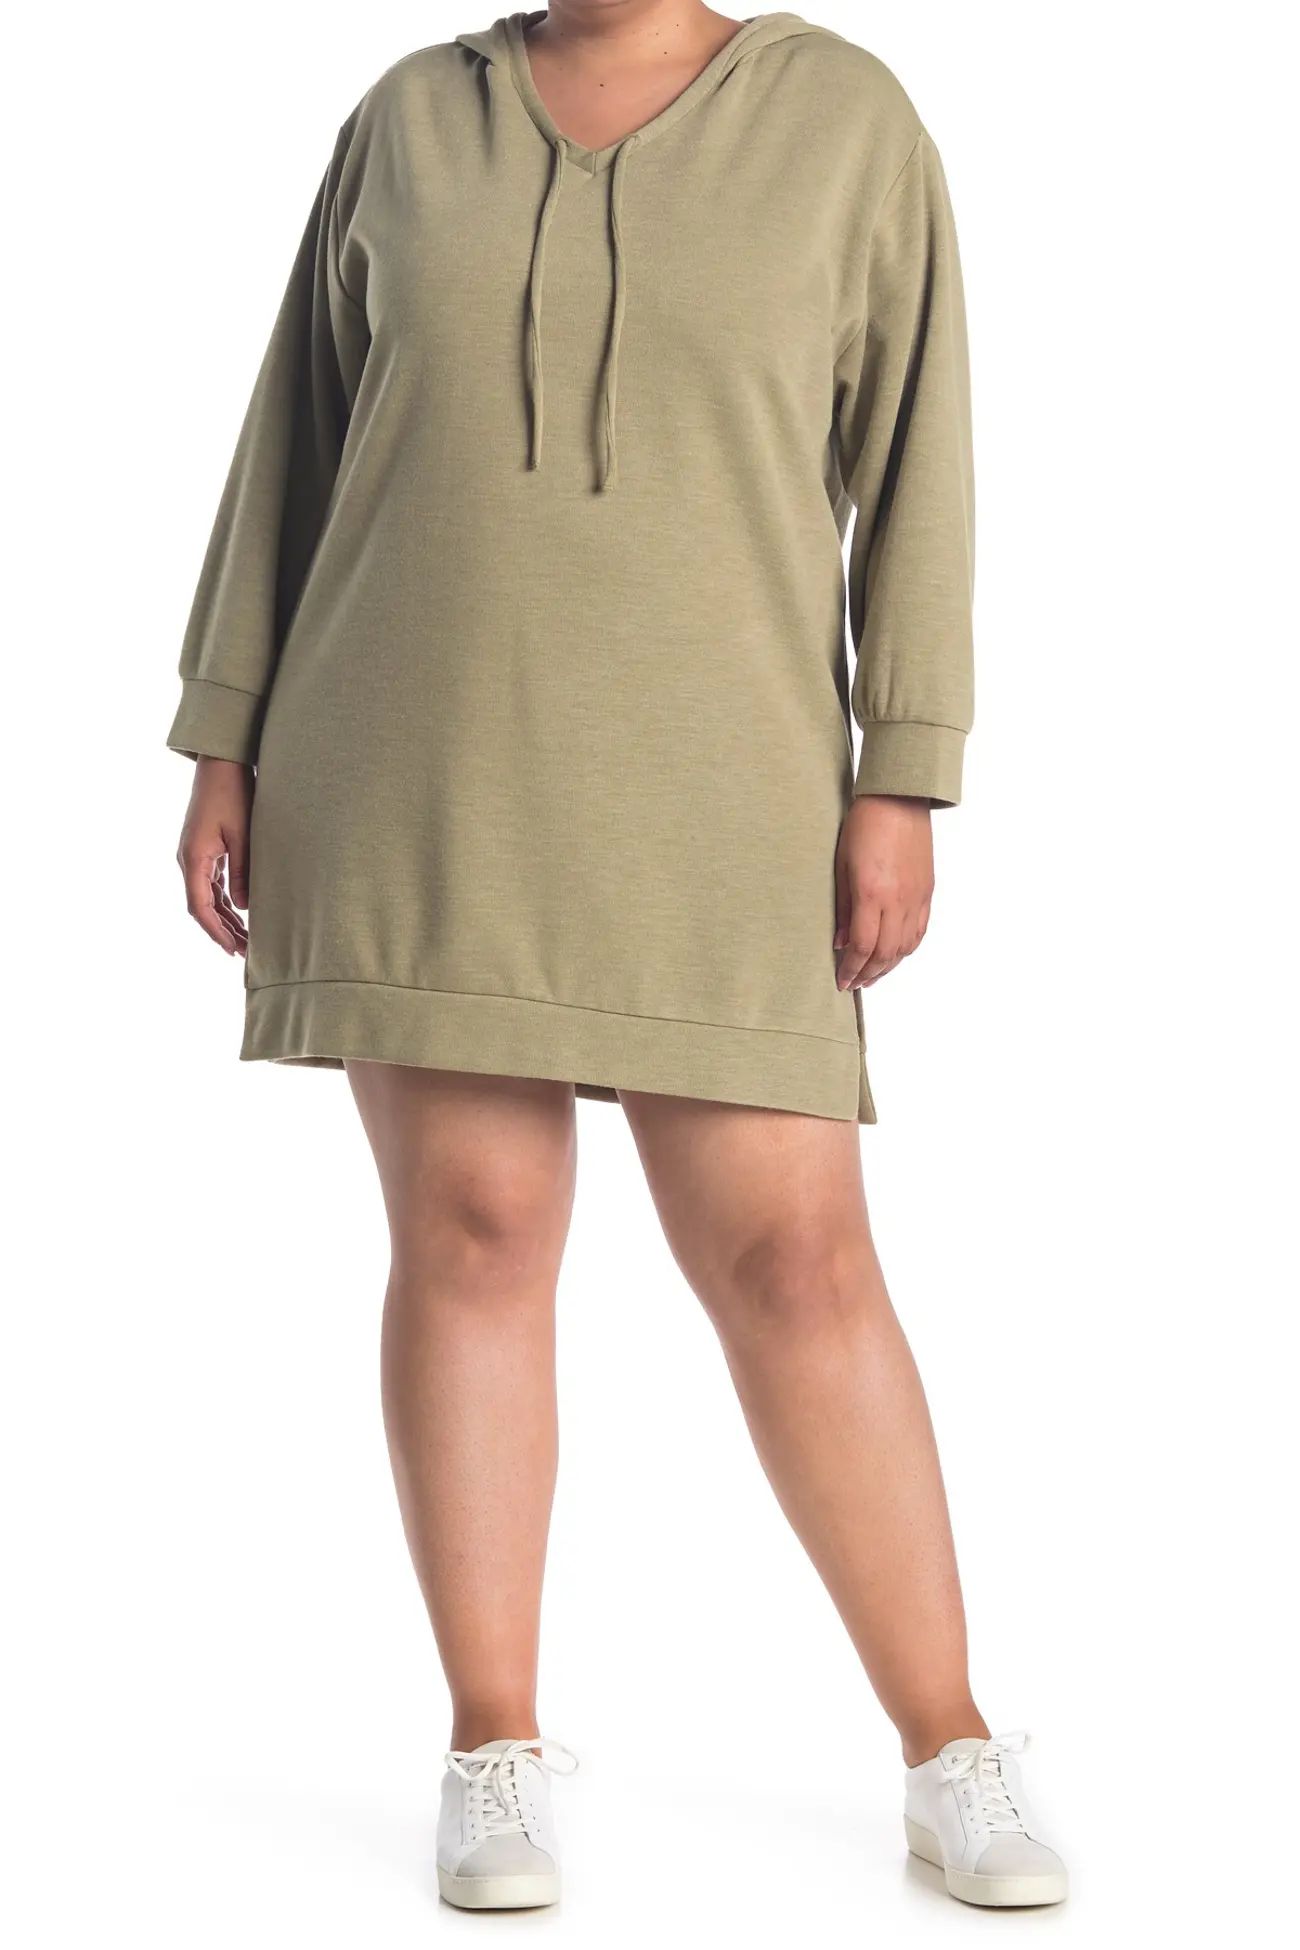 ECLAIR | Hacci Knit Hooded Sweatshirt Dress | Nordstrom Rack | Nordstrom Rack